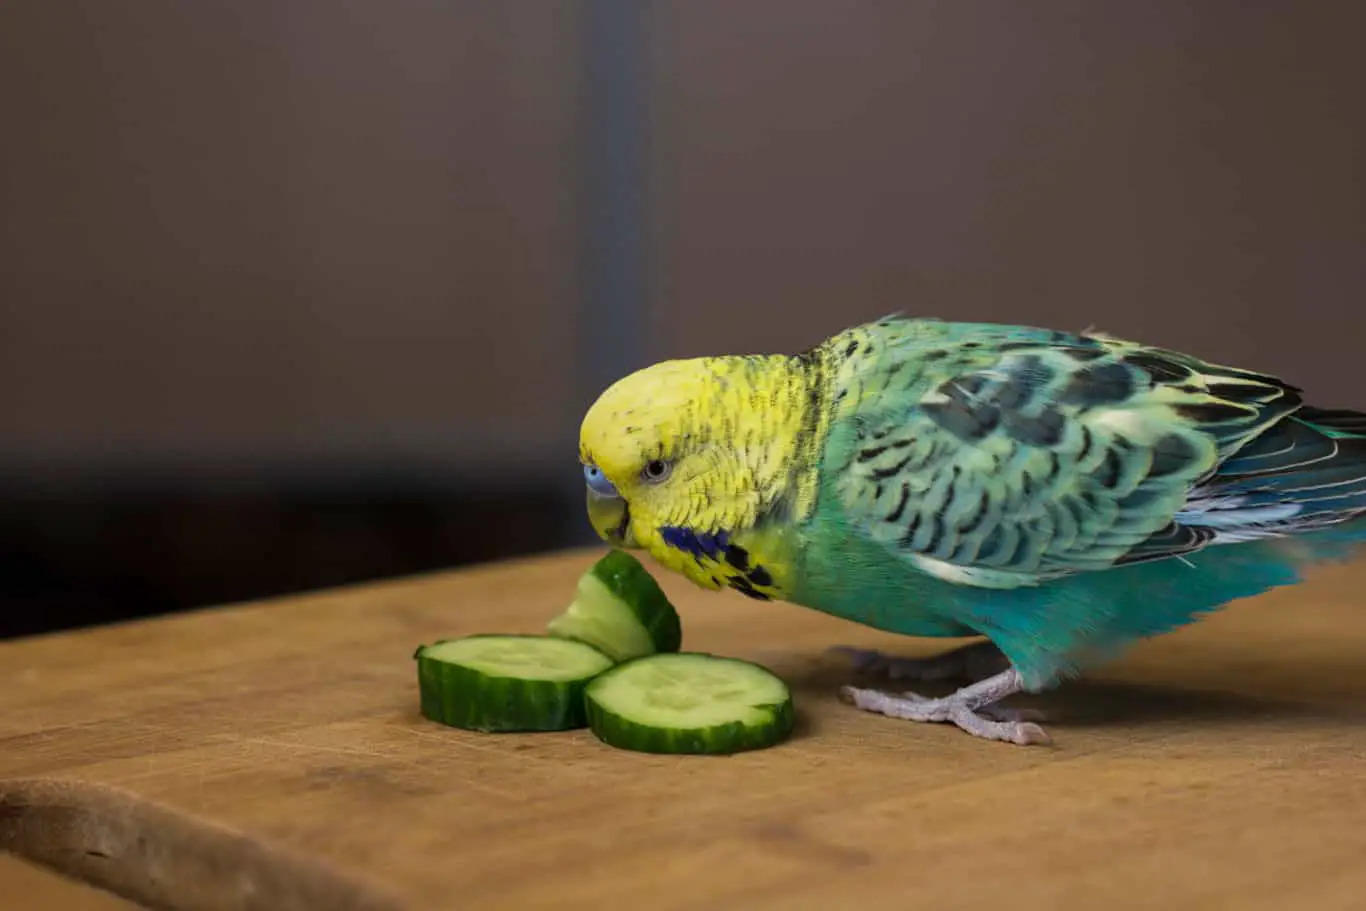 A bird eating cucumber